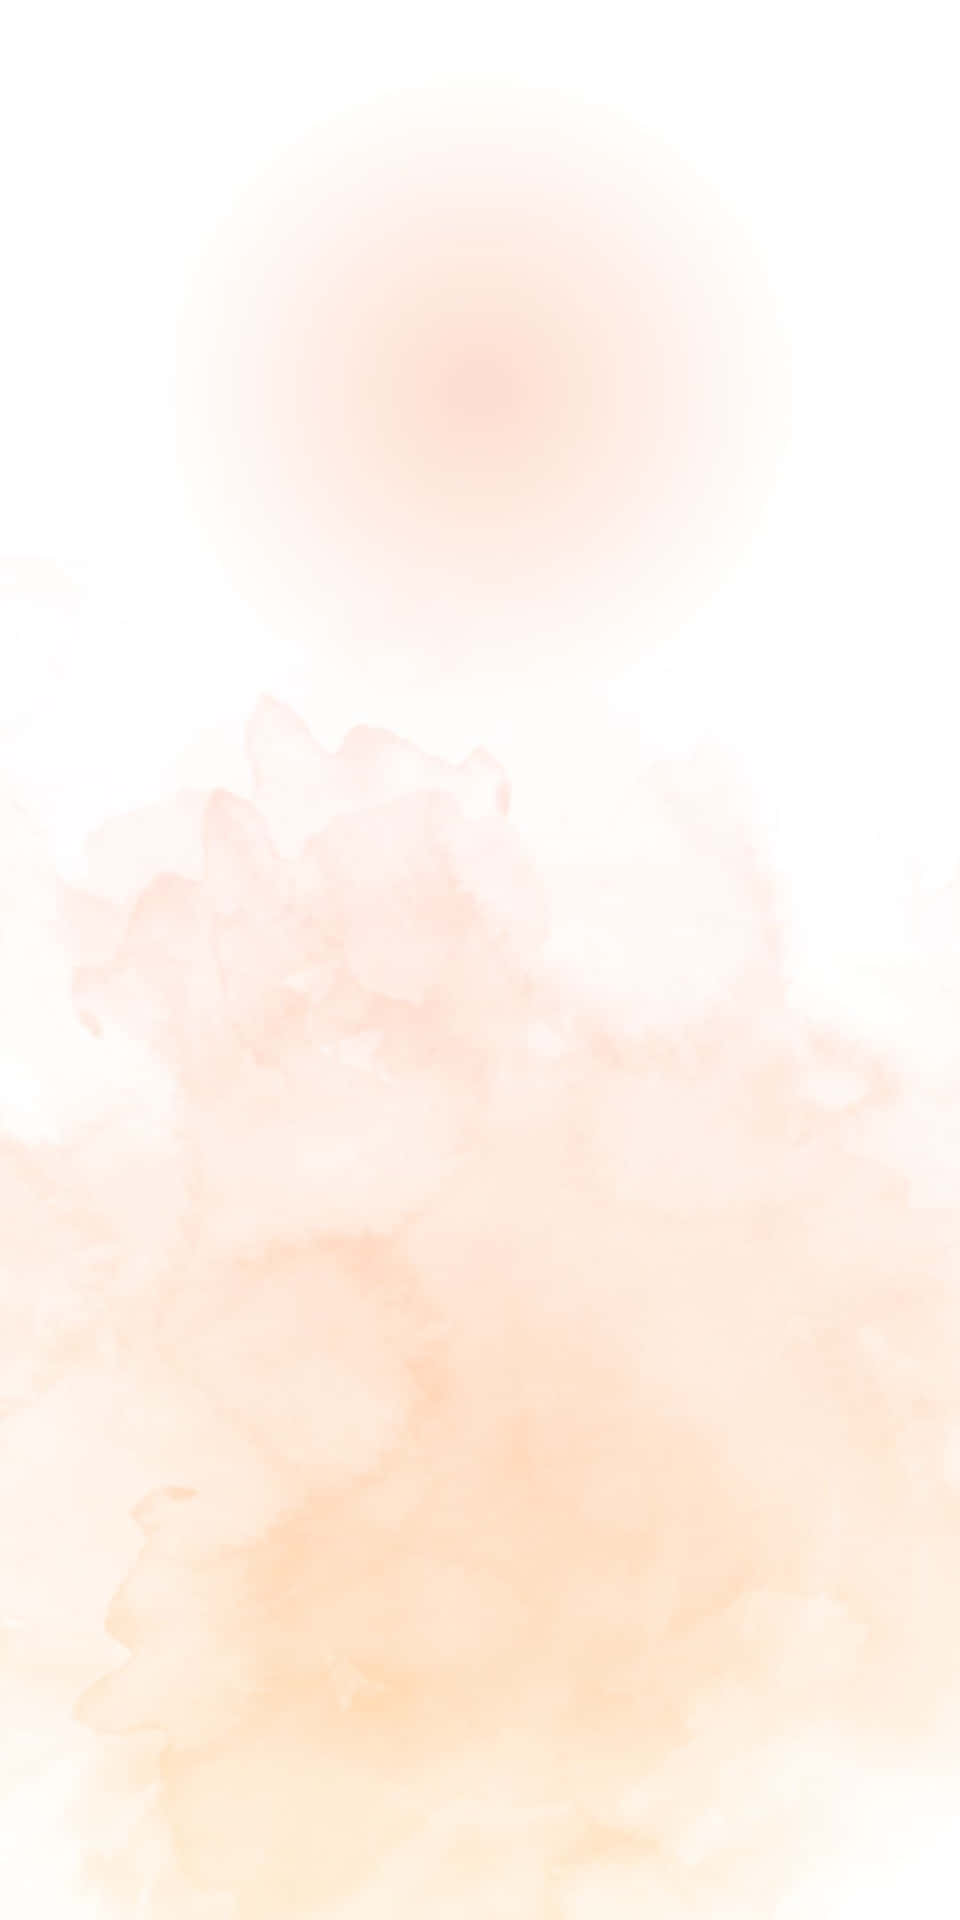 Pixel 3 Background Faint Pink Smudges